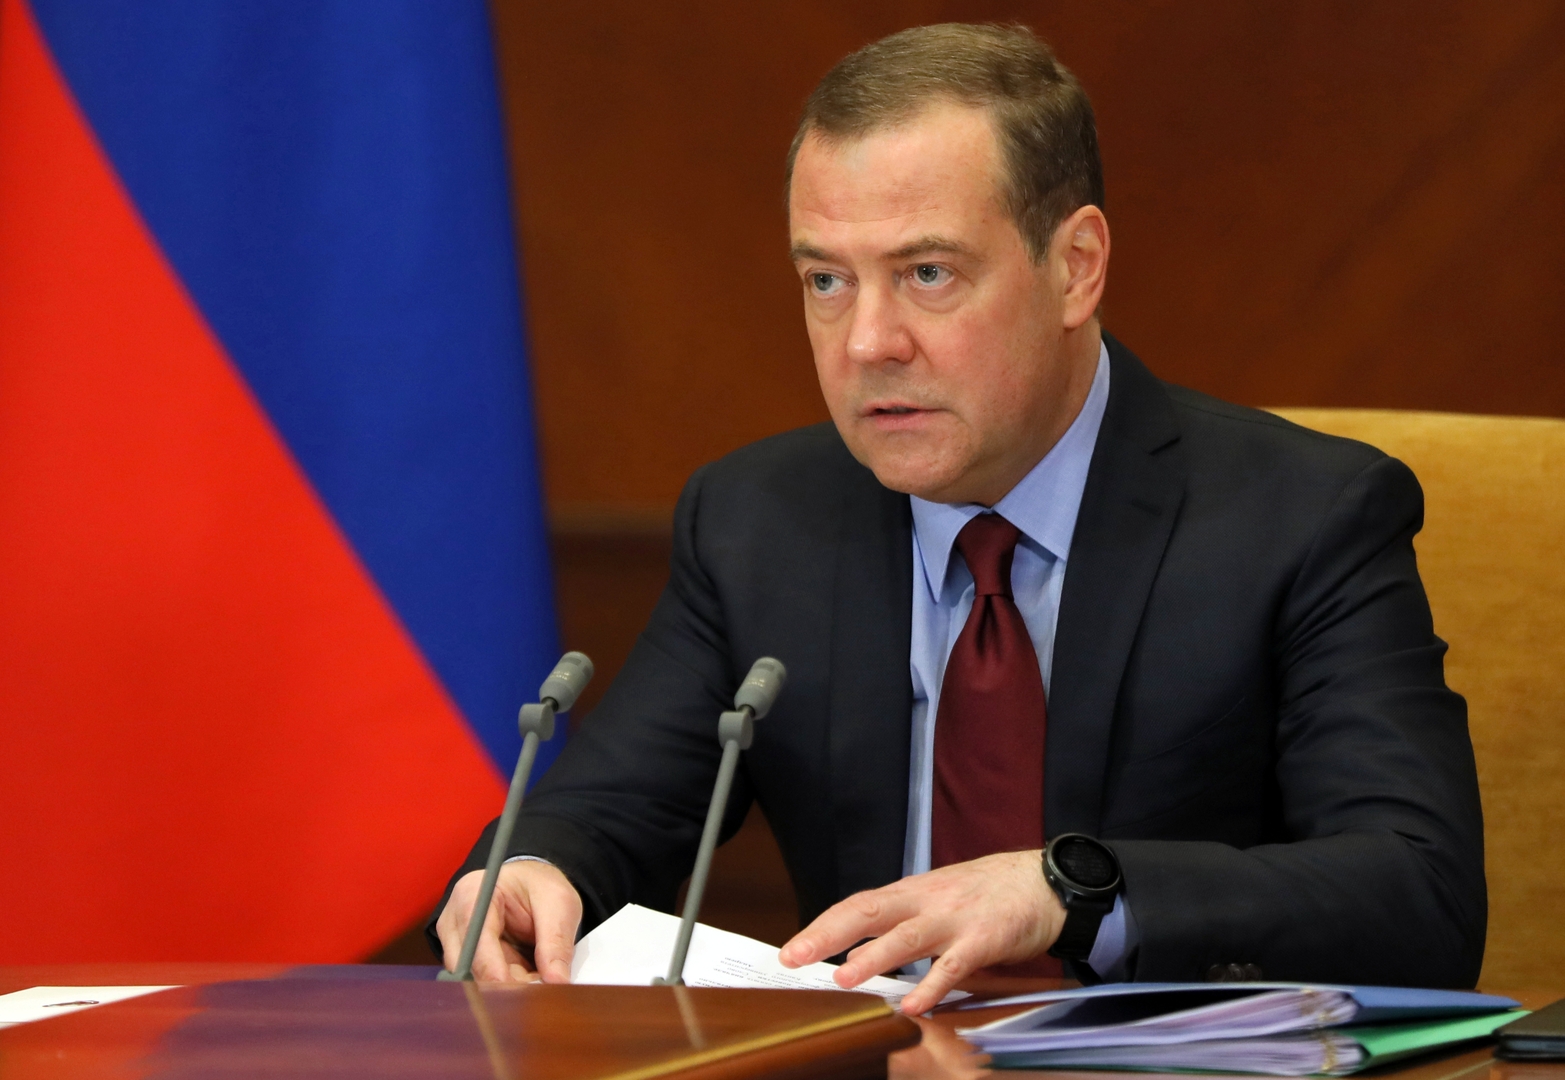 Russia's Medvedev snaps back after U.S. appeal over Ukraine war